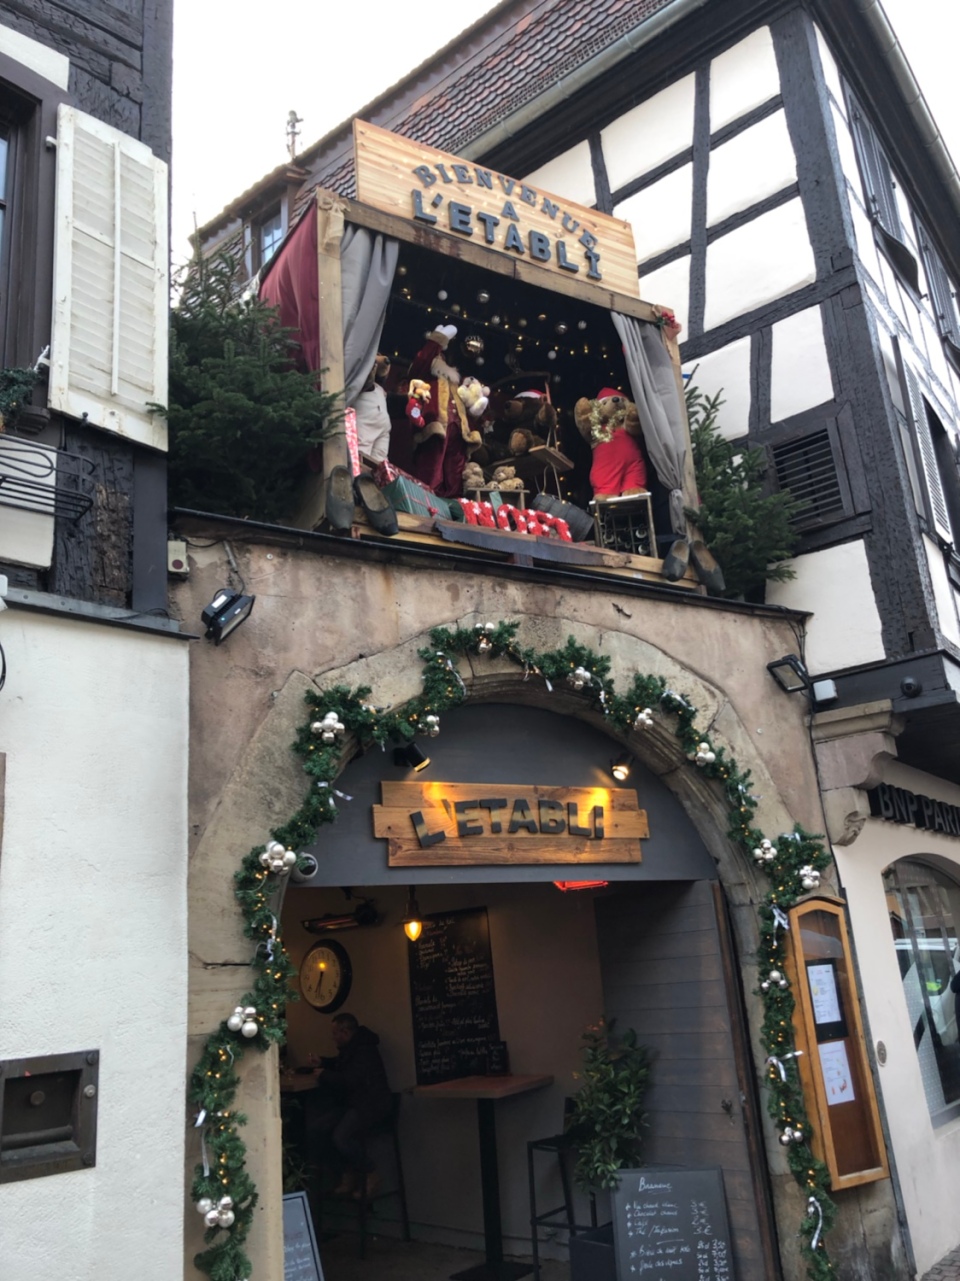 Je vous propose de découvrir les marchés de Noël en Alsace avec les marchés de Noël de Strasbourg, de Colmar et d'Obernai.